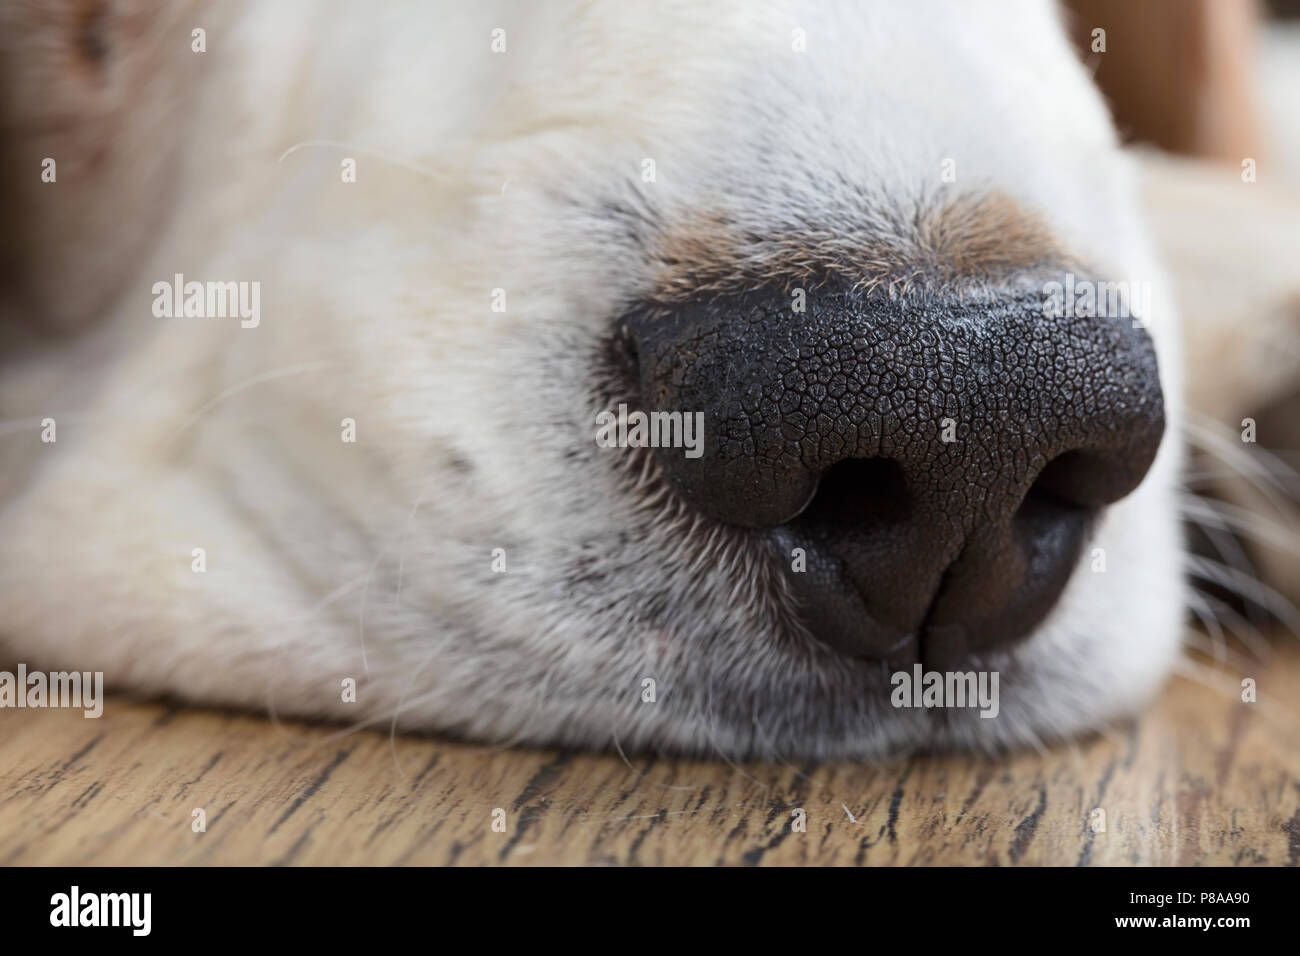 Close up of a dog nose, macro shot. Stock Photo